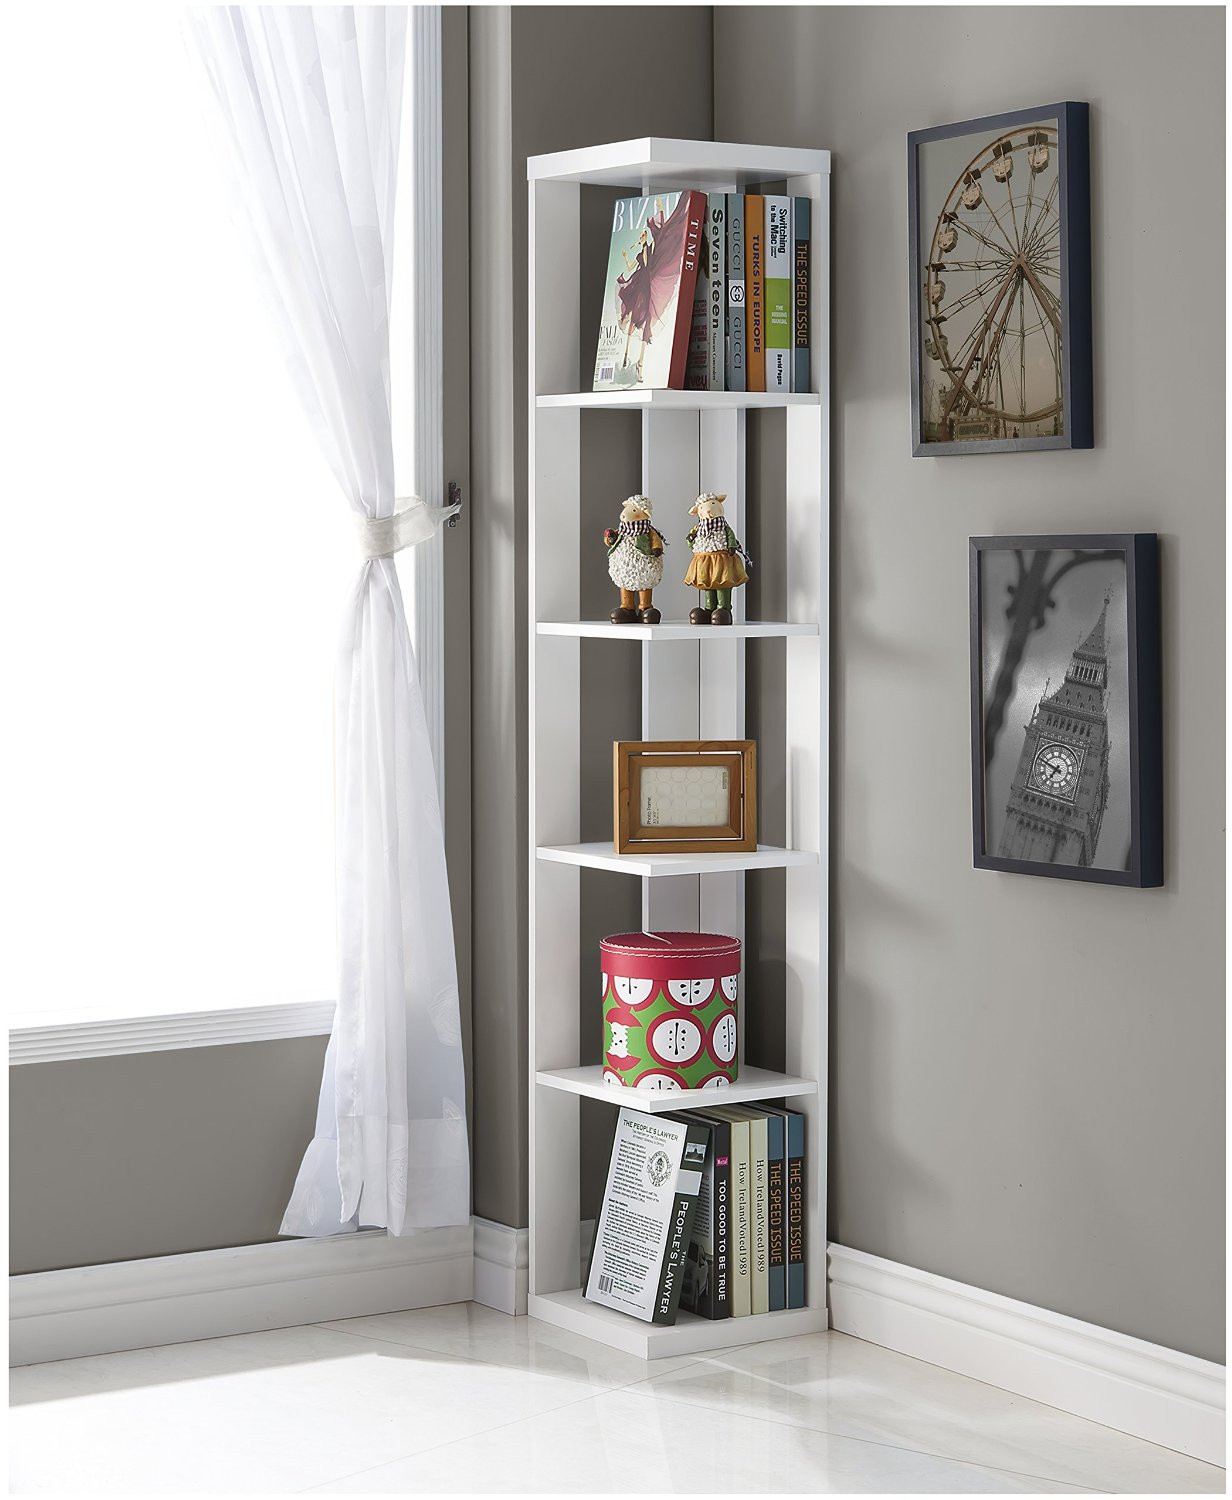 Living Room Shelf Ideas
 Top 10 Corner Shelves for Living Room